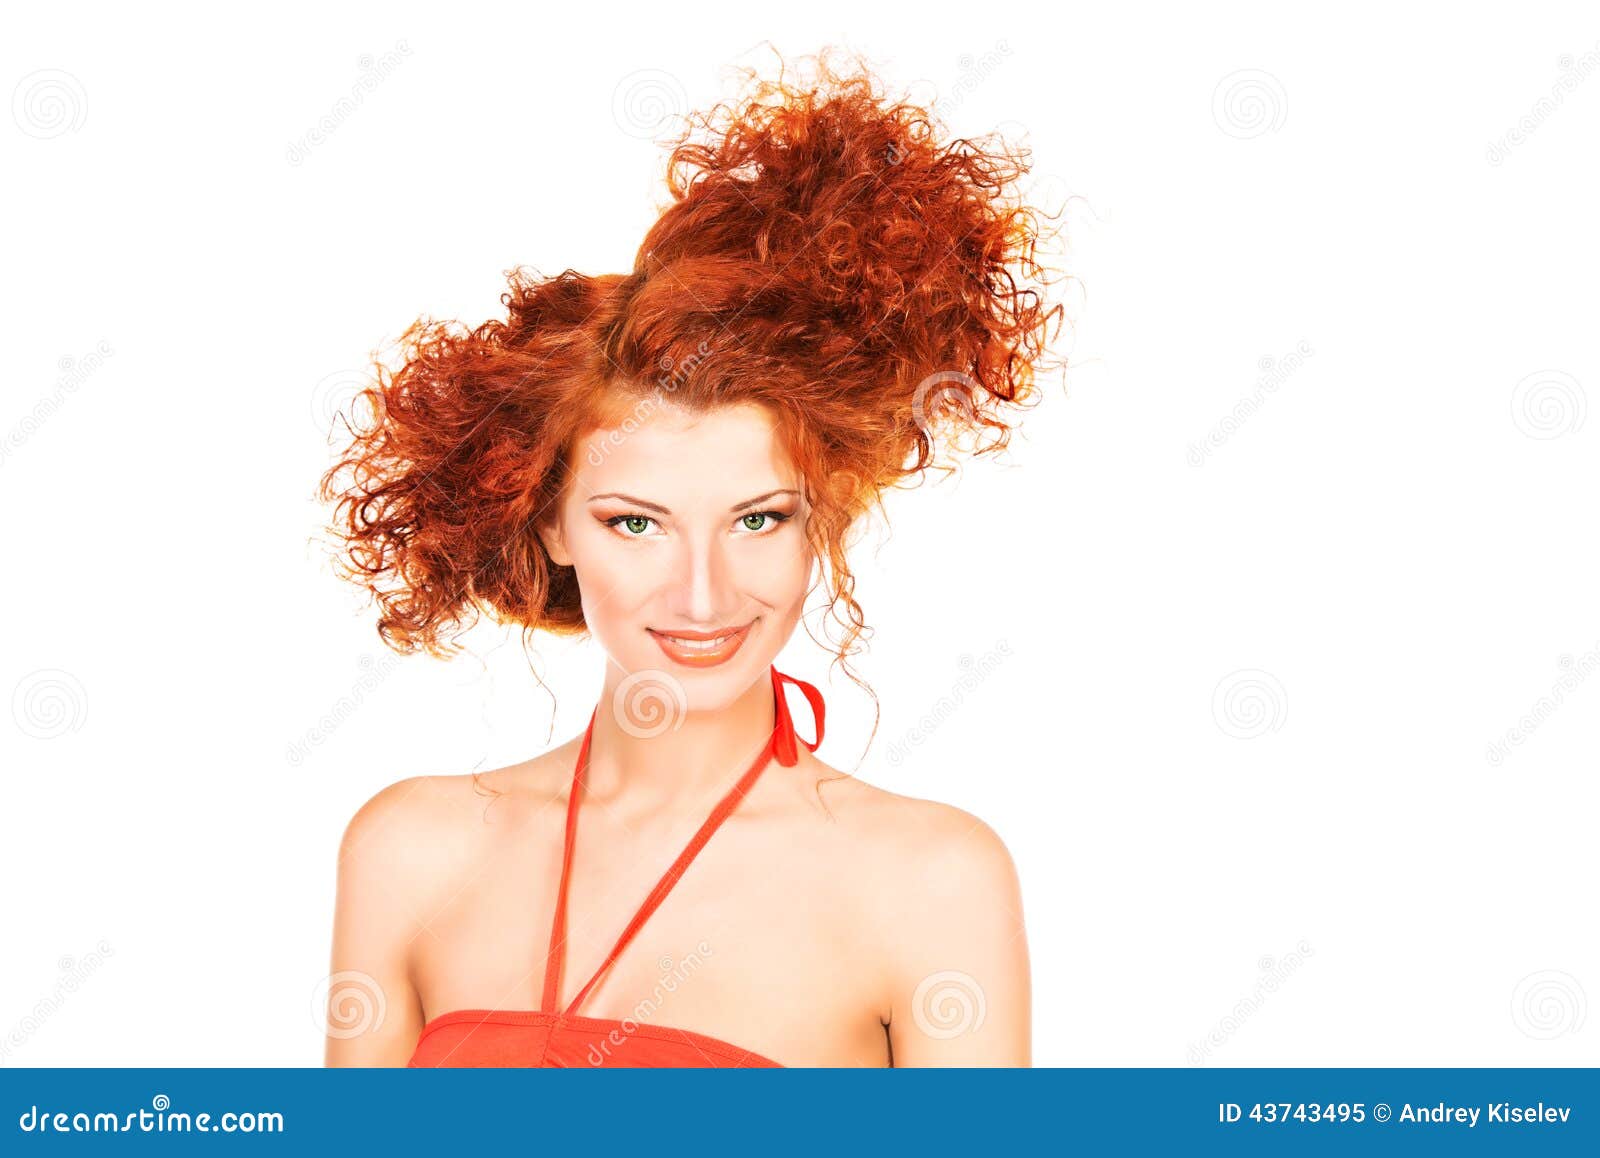 Funny Hairdo Stock Image Image Of Joyful Close Face 43743495